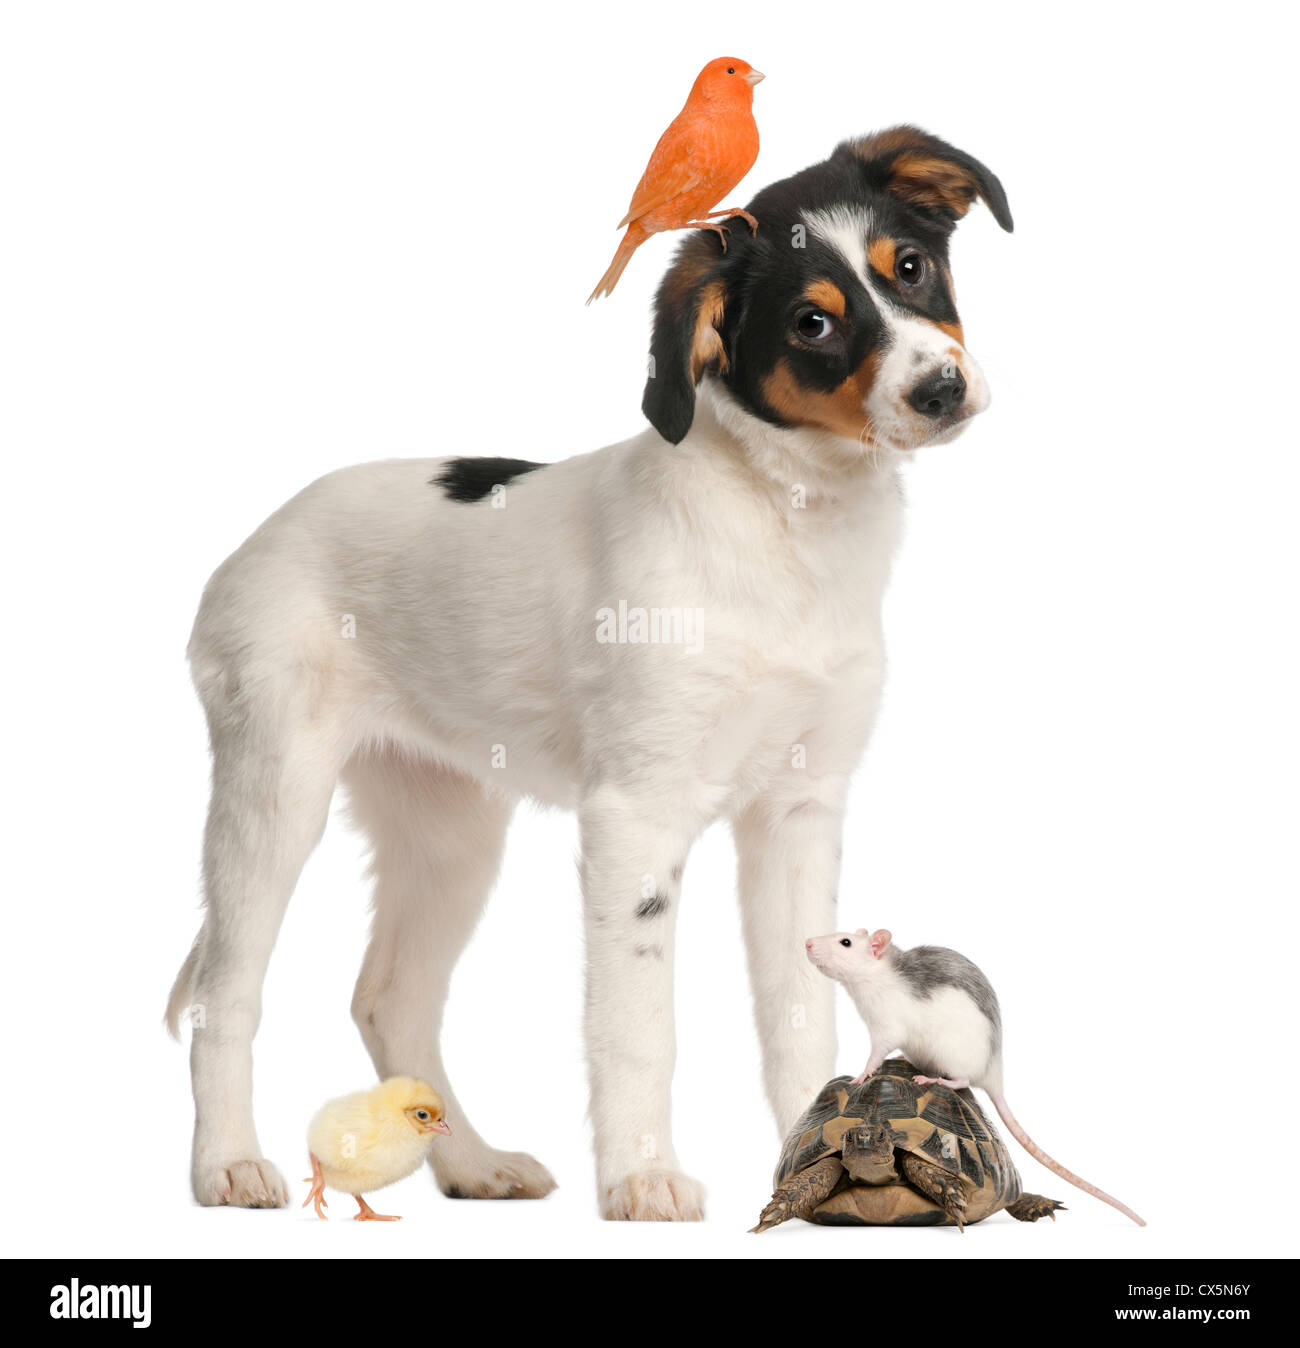 Cachorro de raza mixta, Canarias, garbanzos, tortuga y rata contra fondo blanco. Foto de stock